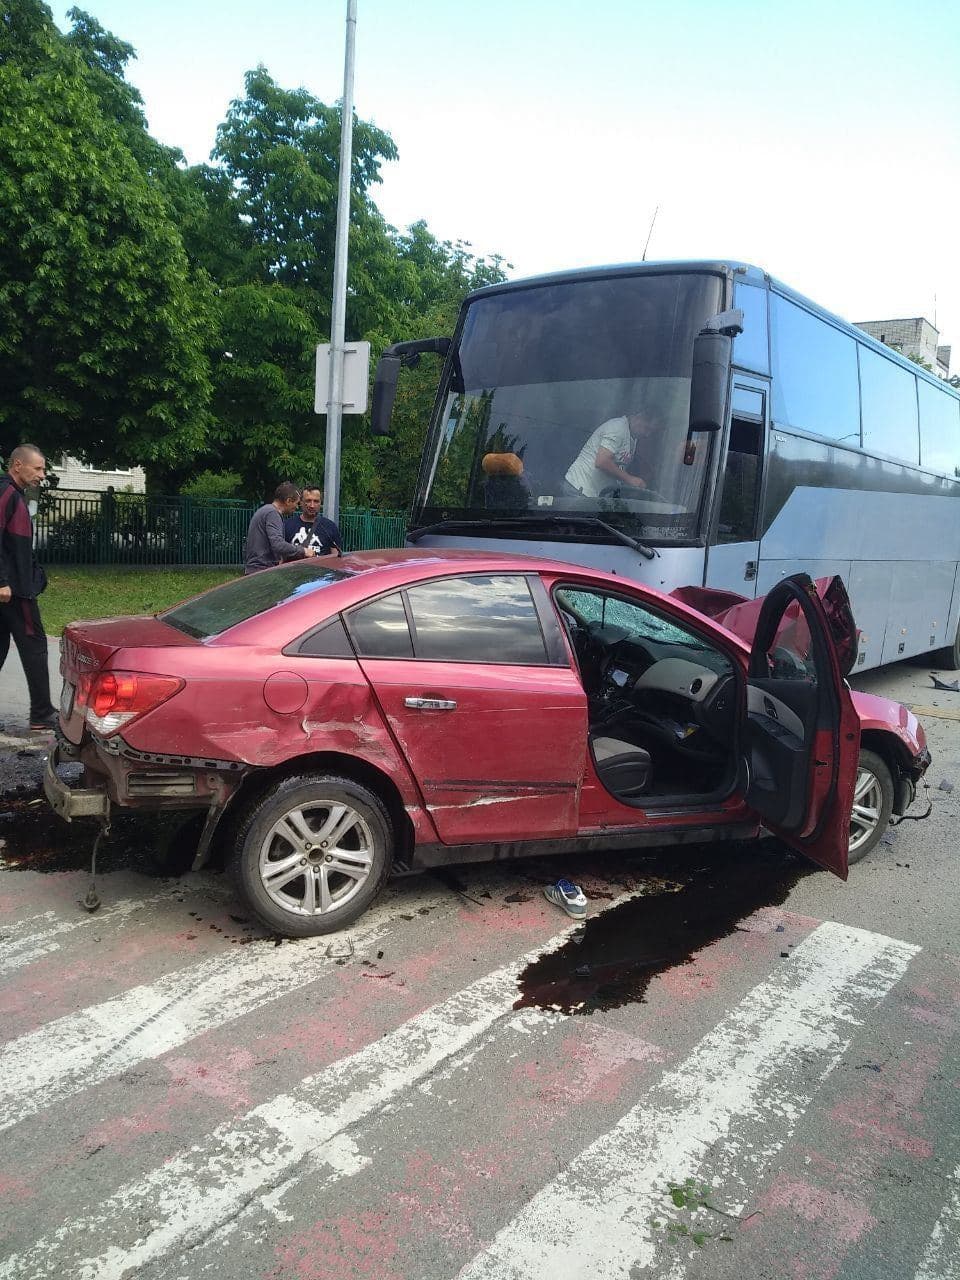 Травмы, причины ДТП, фото: новые подробности аварии в Приморске, где легковушка врезалась в автобус